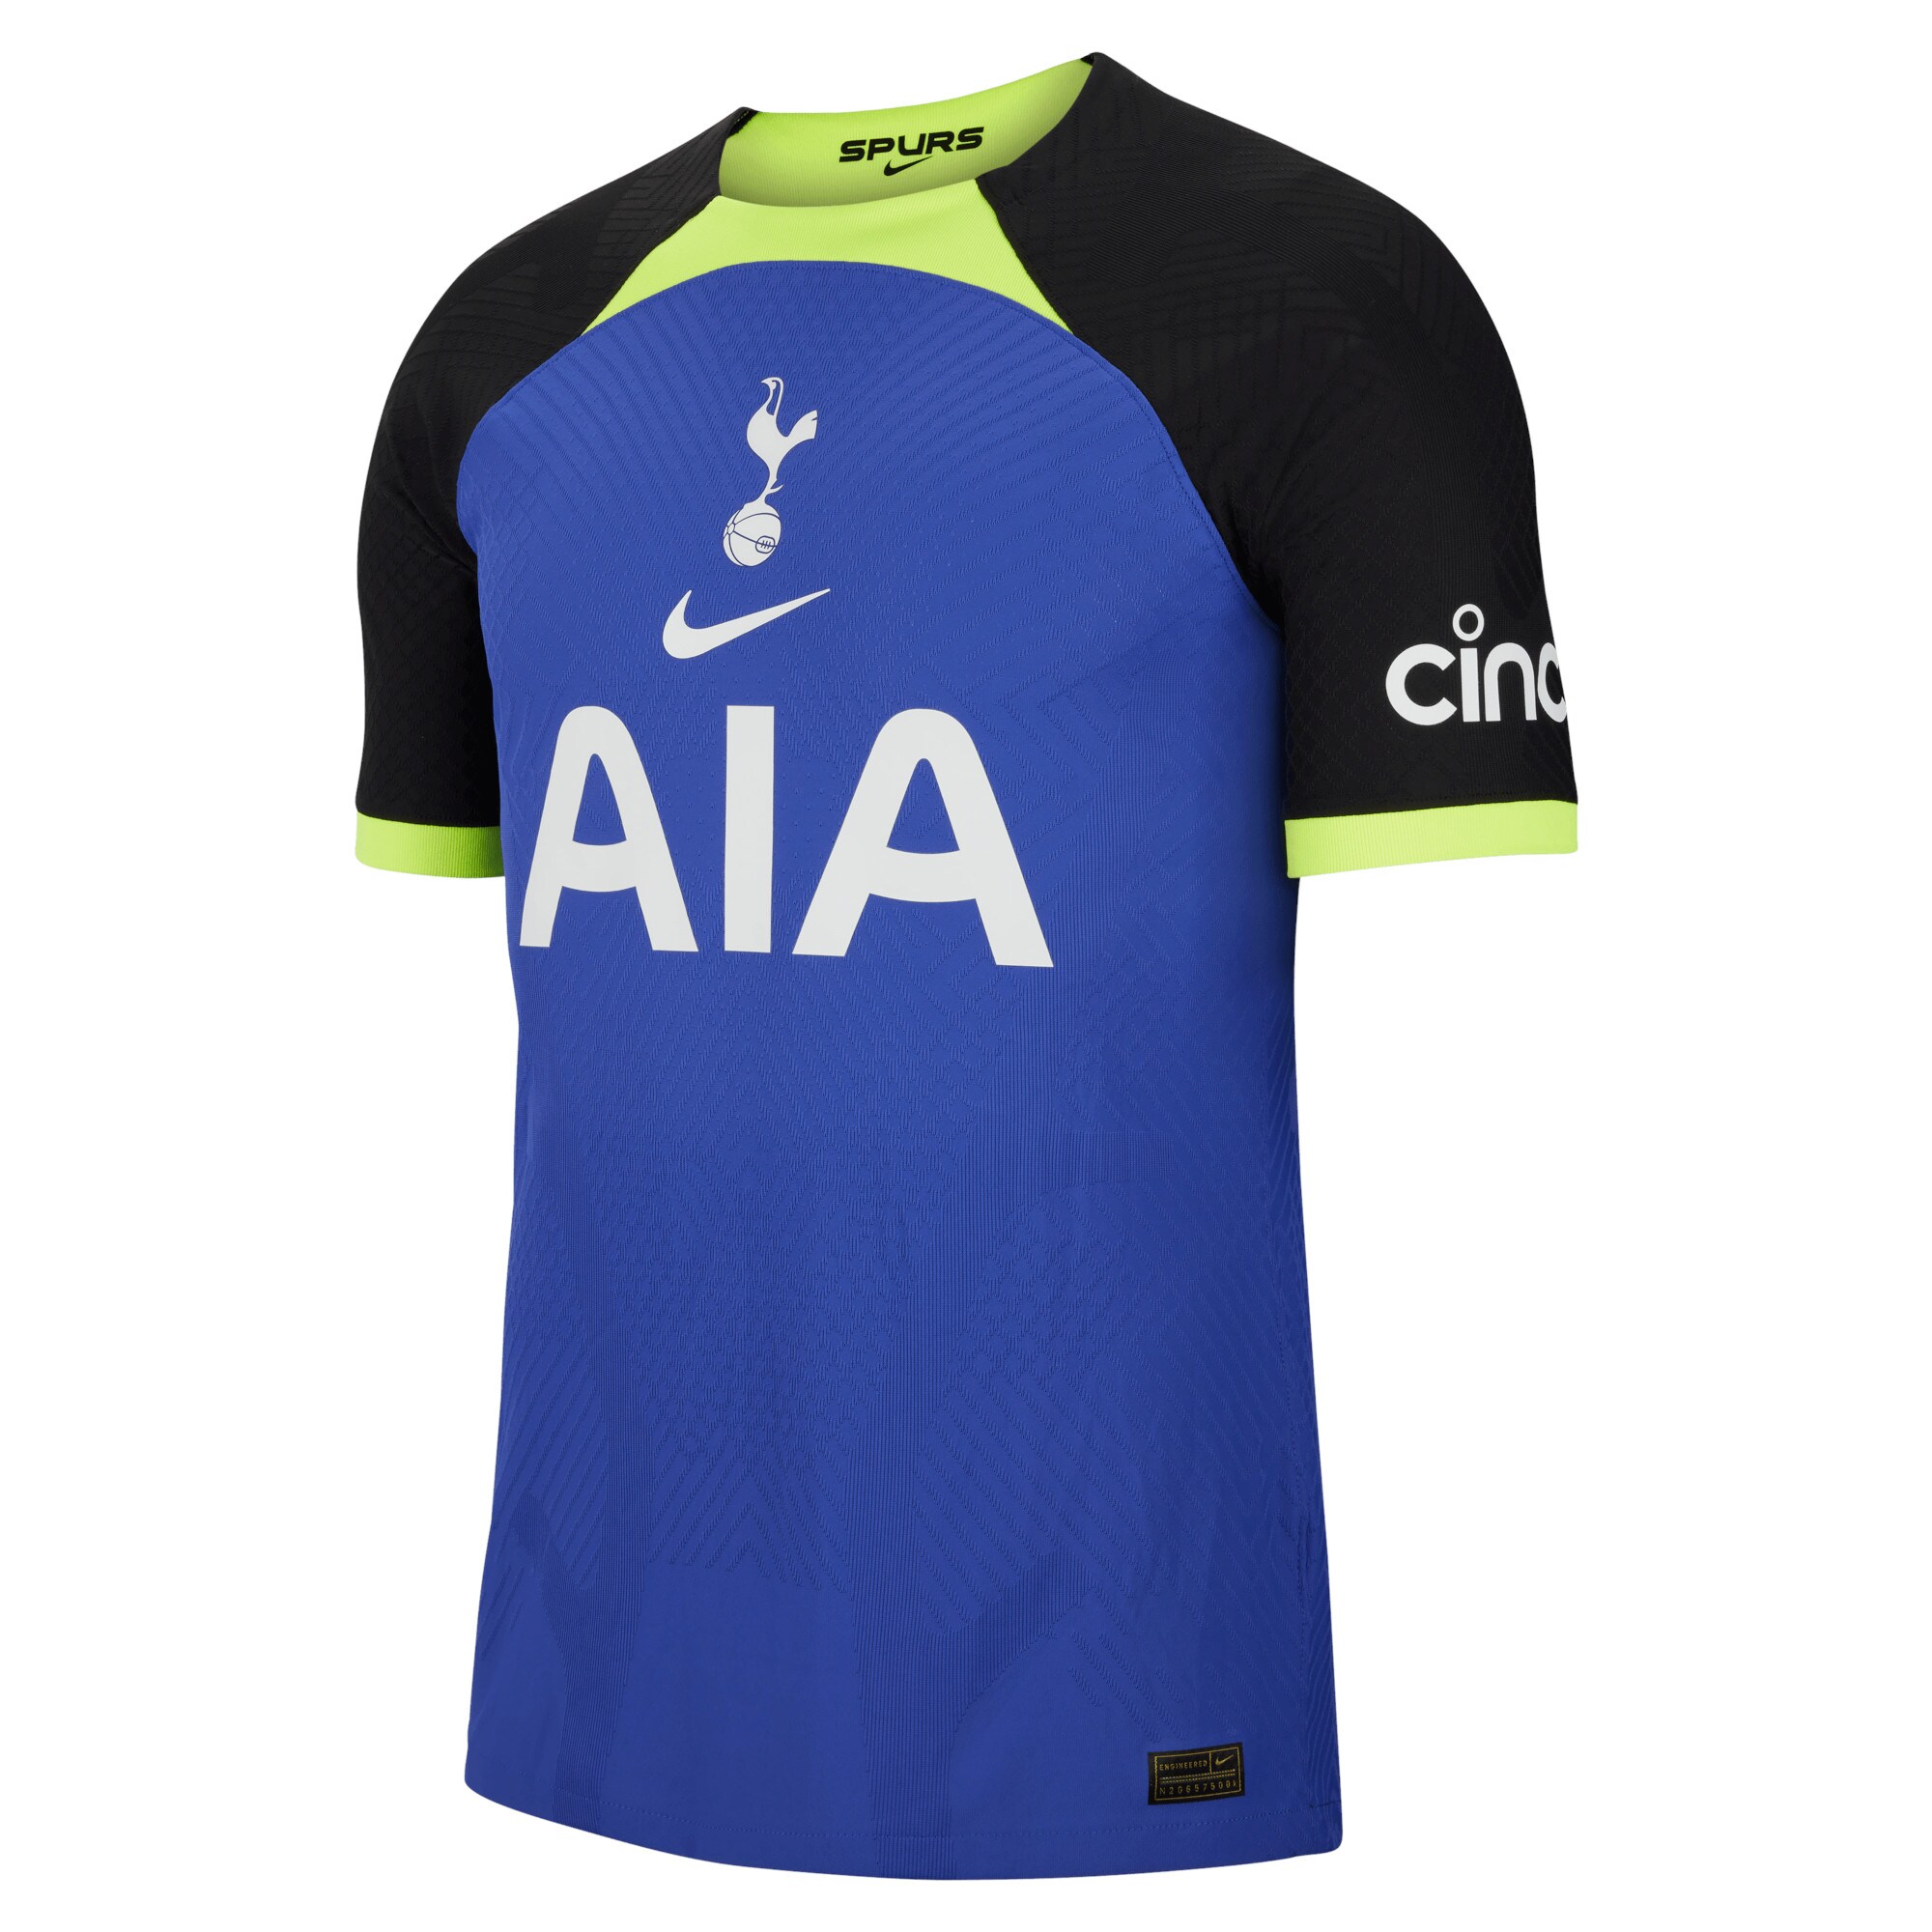 Tottenham Hotspur Away Vapor Match Shirt 2022-23 with Doherty 2 printing